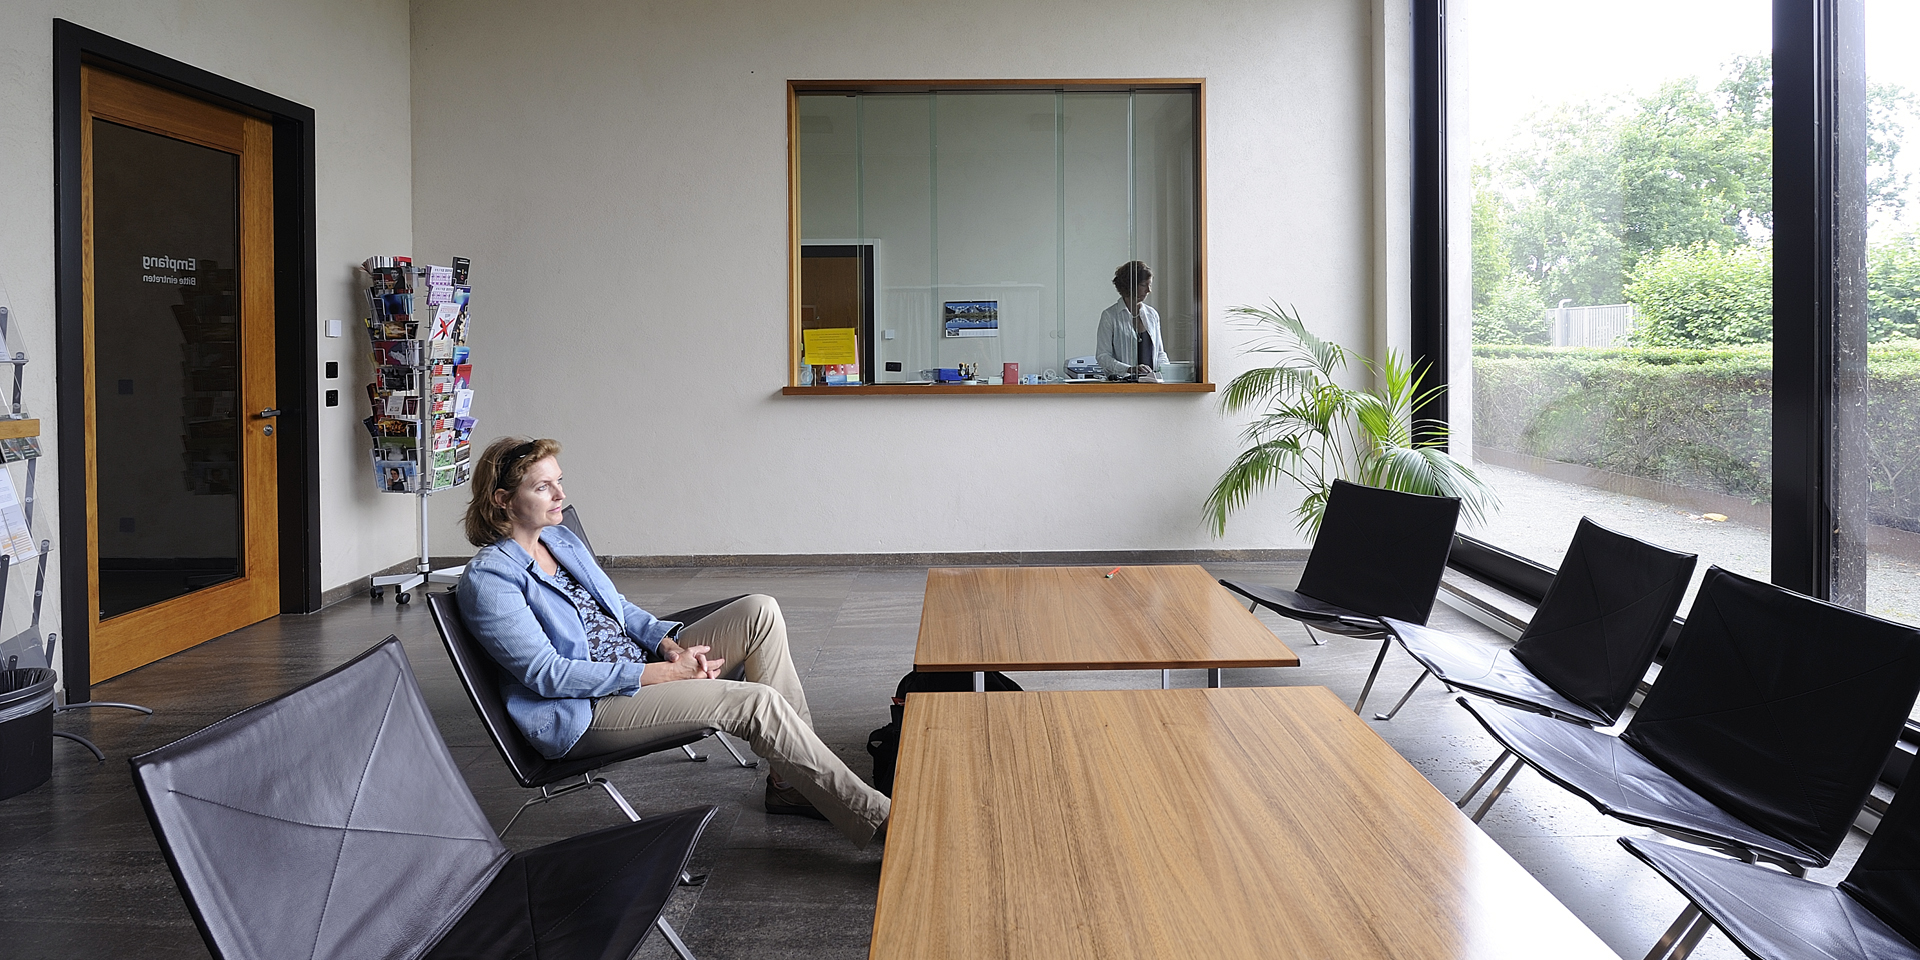 Salle d’attente du consulat suisse à berne. Une femme assise attend son tour pendant qu’un membre du personnel du consulat travaille derrière le guichet.